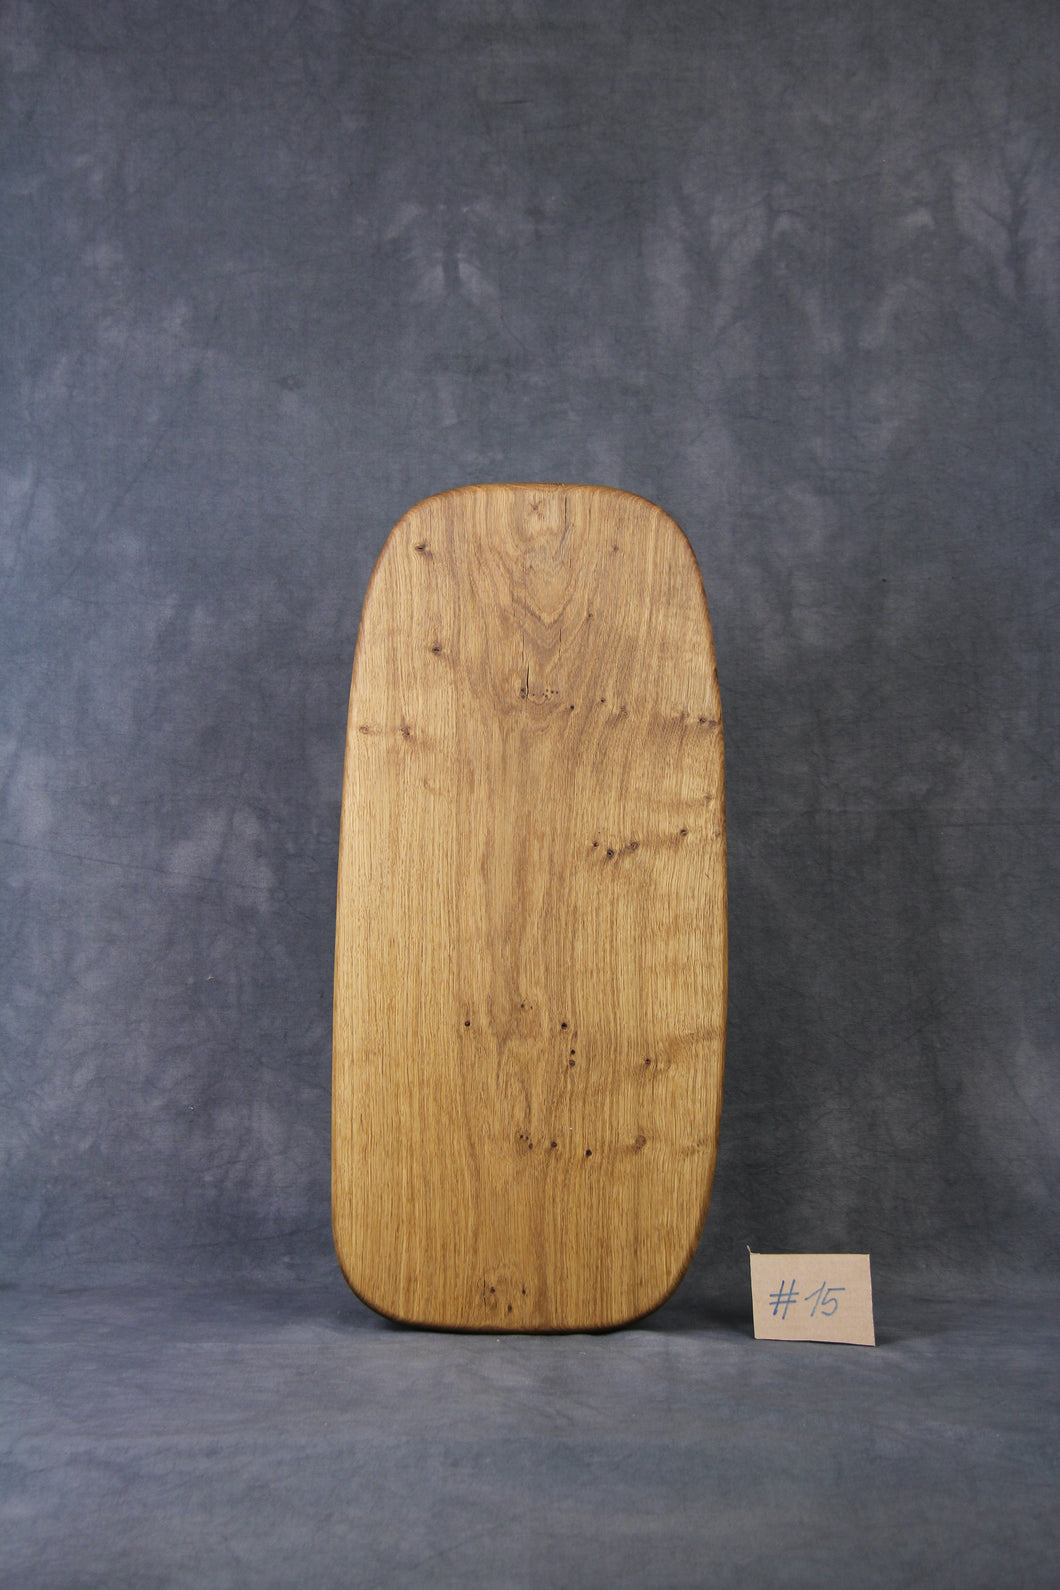 Brotzeitbrett, Servierbrett, Schneidebrett, Cuttingboard, Charcuterie Board. No. 15 - ca. 60 cm. Aus einem Stück Eiche - handgefertigt.